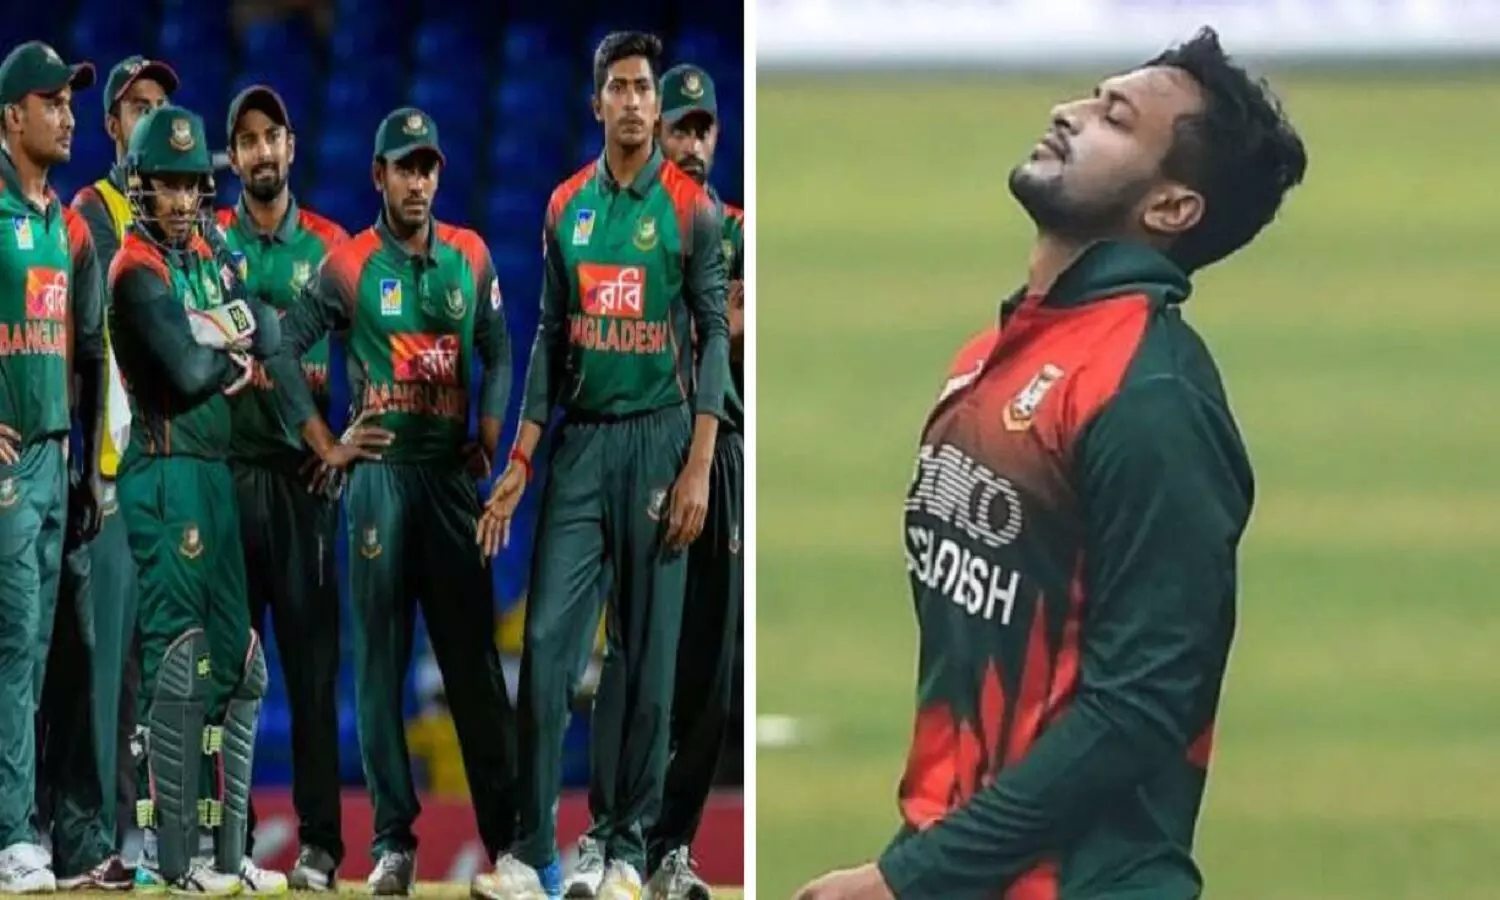 India vs Bangladesh 1st ODI